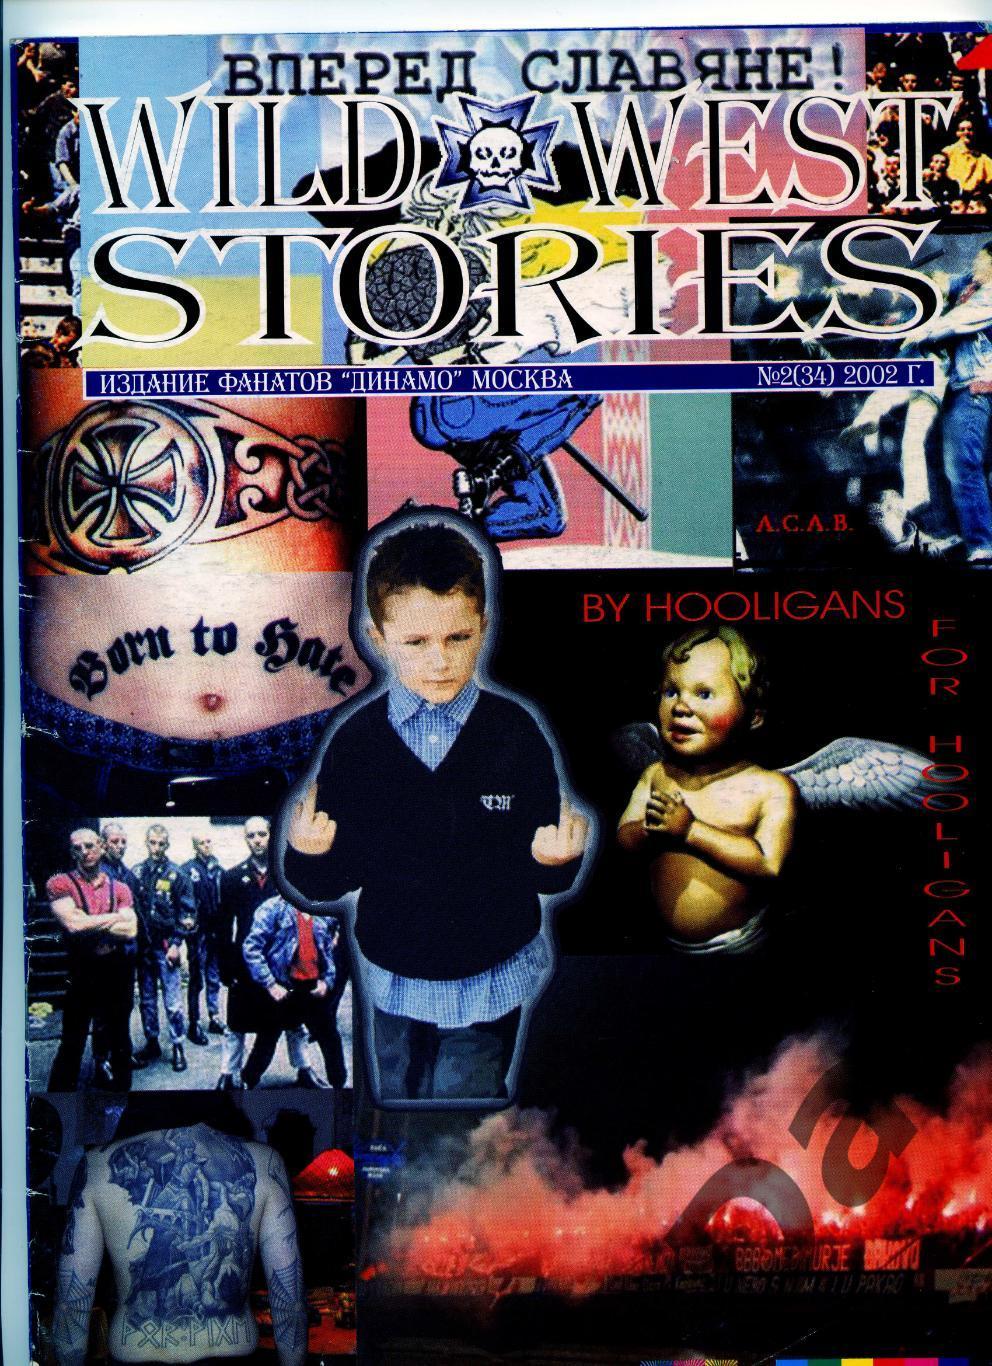 фанзин Wild West Stories №2 (34) за 2002 год (ФК Динамо Москва)